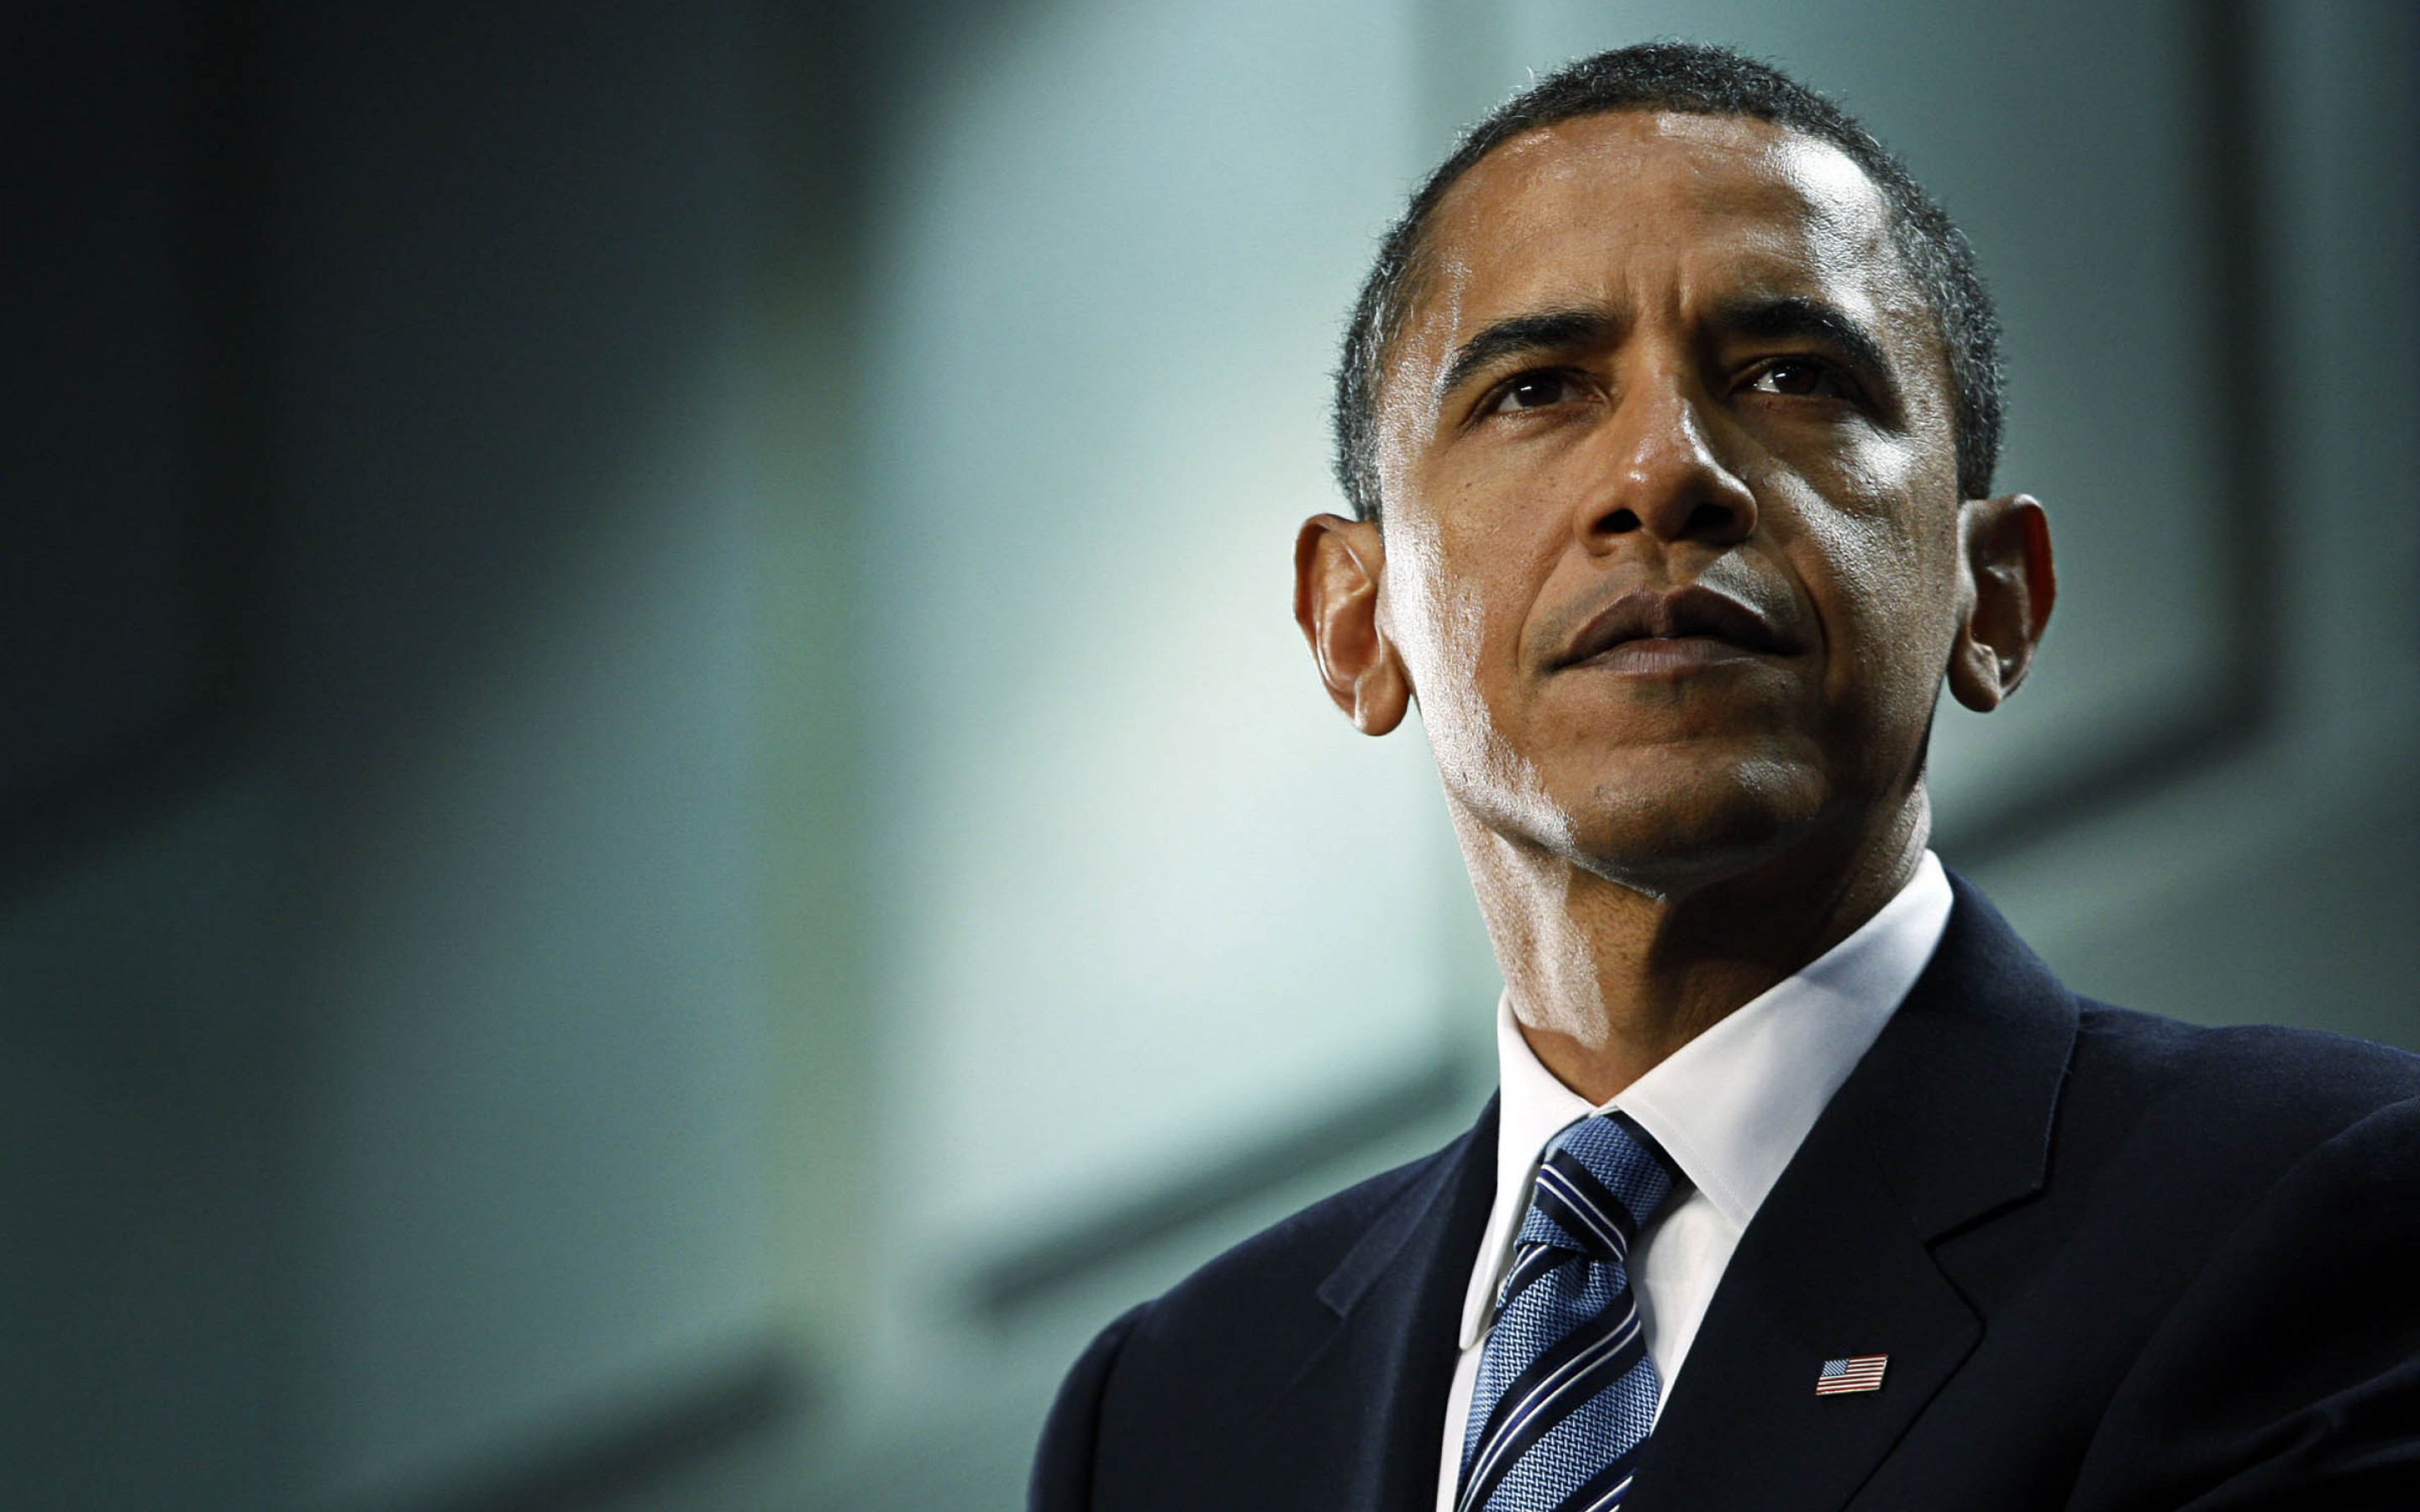  Obama realizará histórica visita a Hiroshima